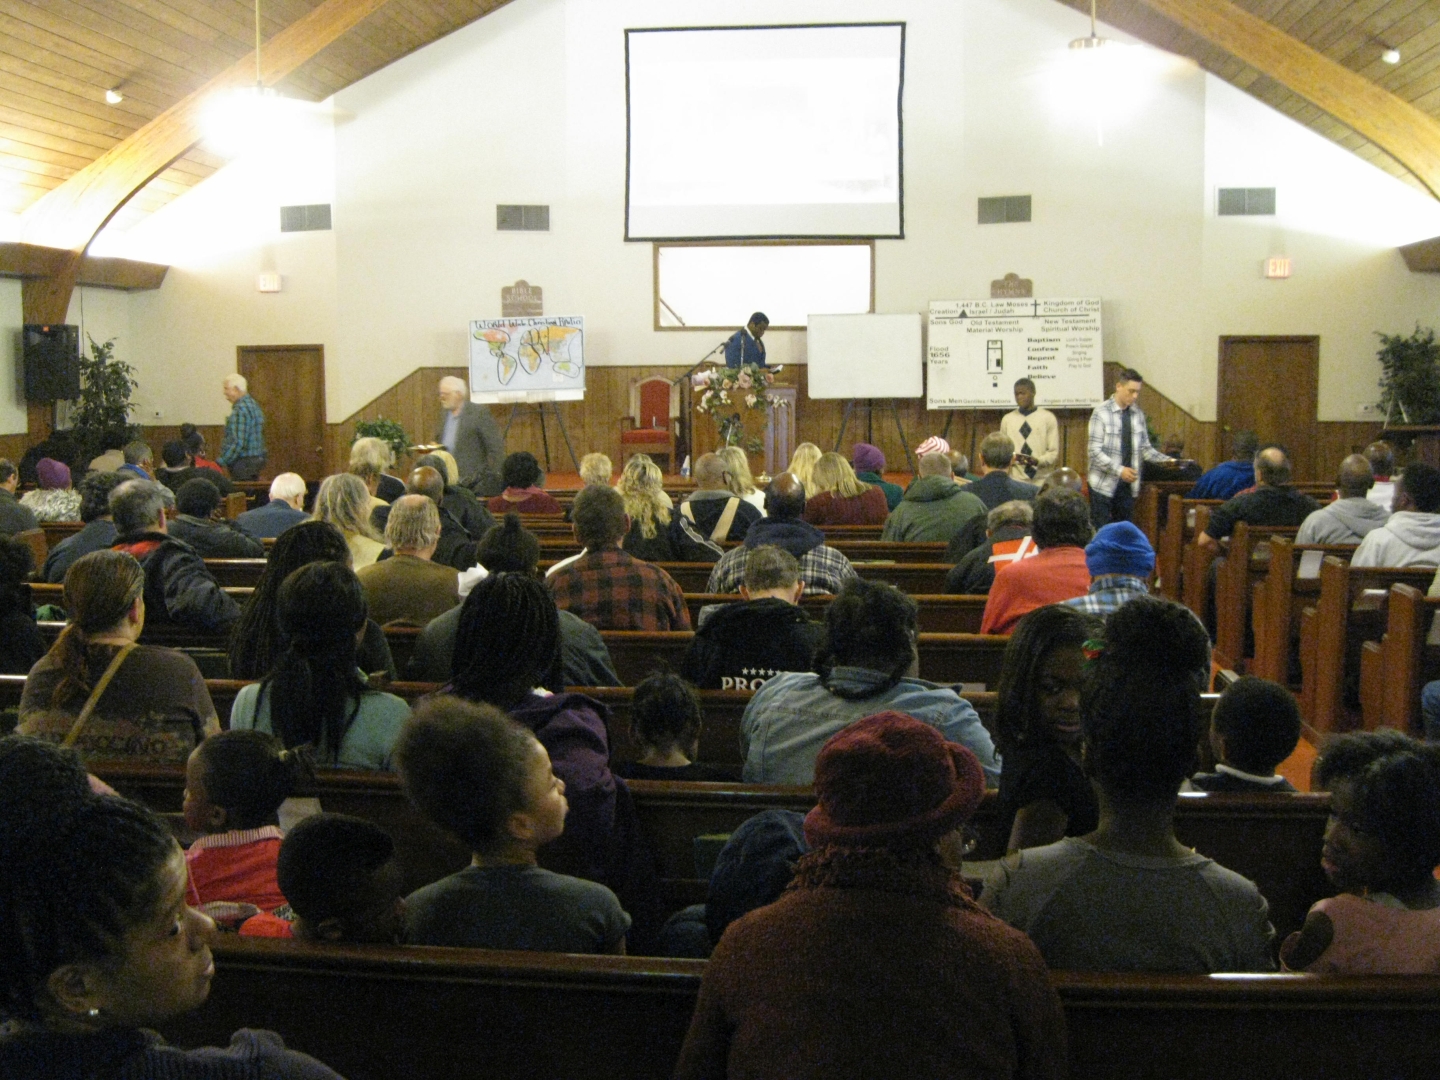 Church of christ preaching jobs in arkansas